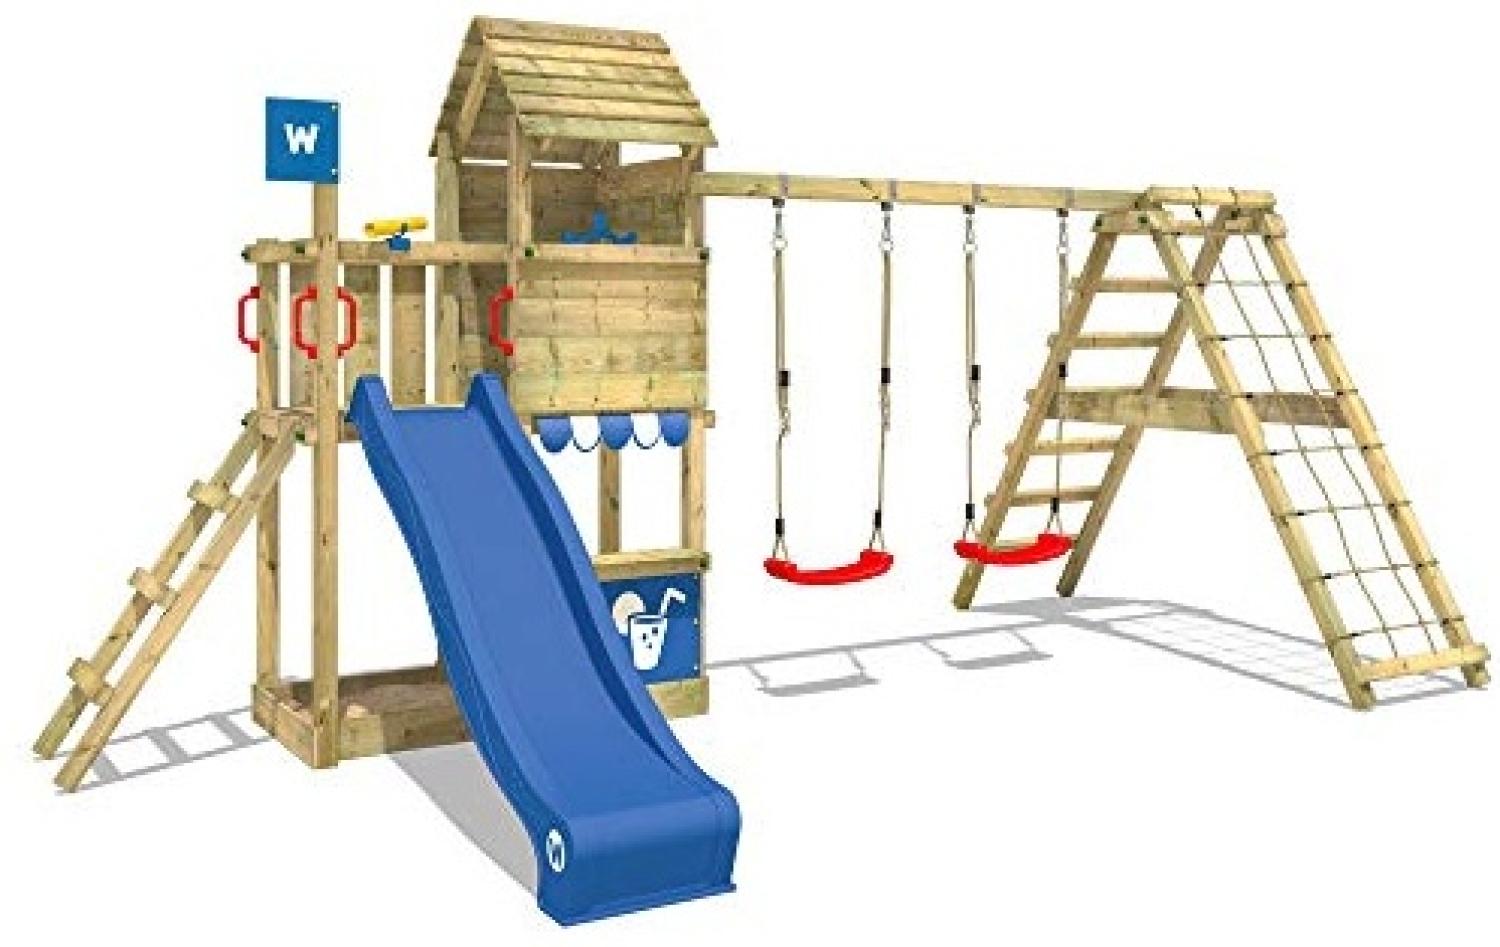 WICKEY Spielturm Klettergerüst Smart Port mit Schaukel & blauer Rutsche, Kletterturm mit Sandkasten, Leiter & Spiel-Zubehör Bild 1